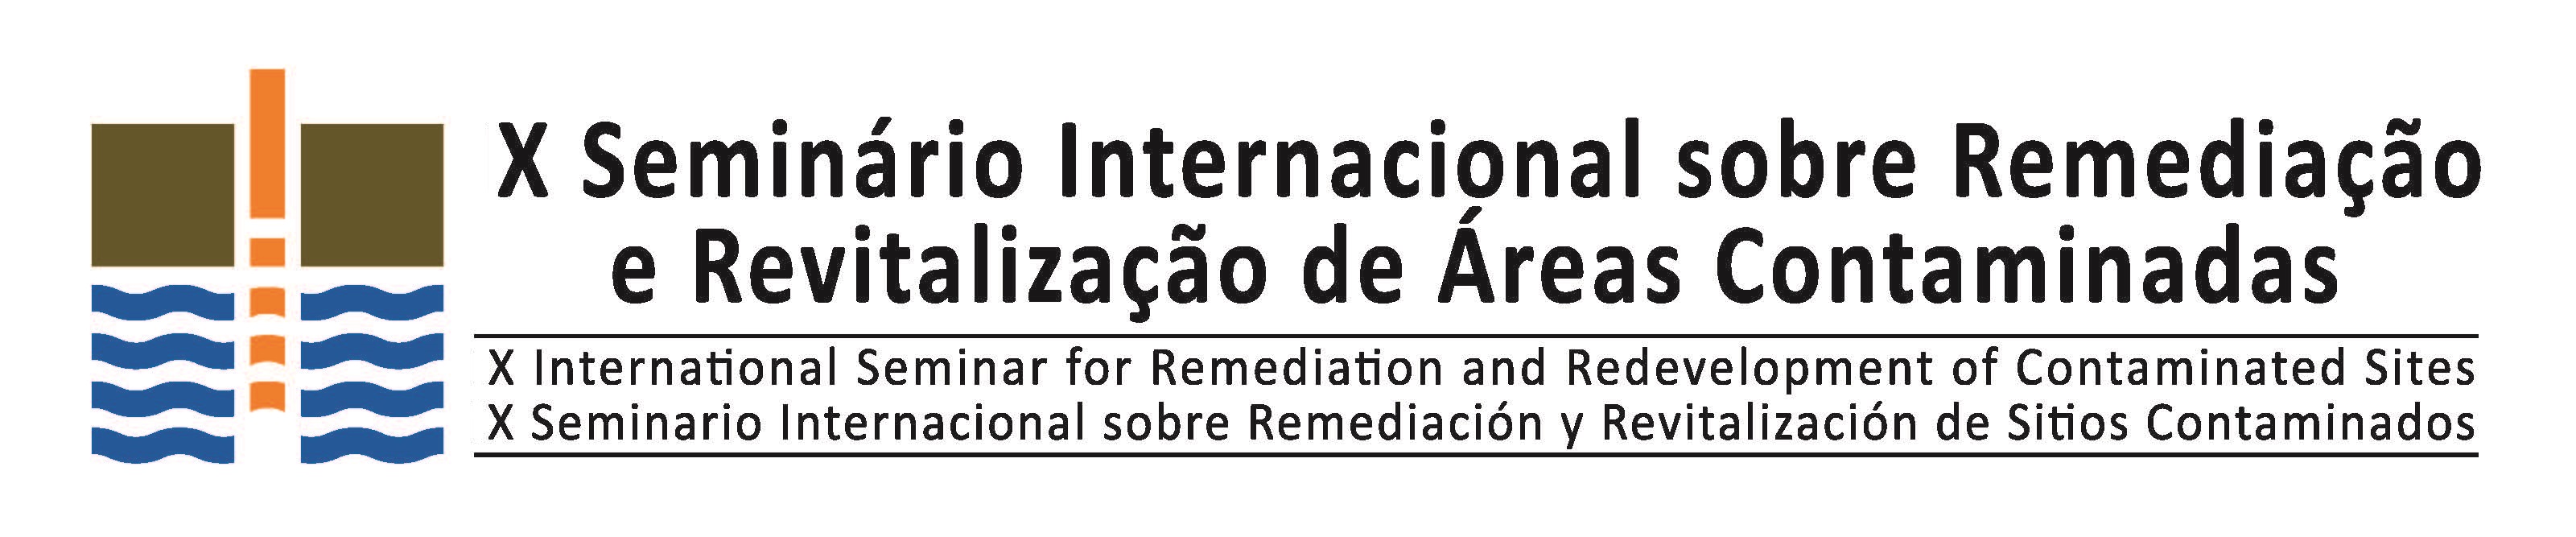 X Seminário Internacional sobre Remediação e Revitalização de Áreas Contaminadas